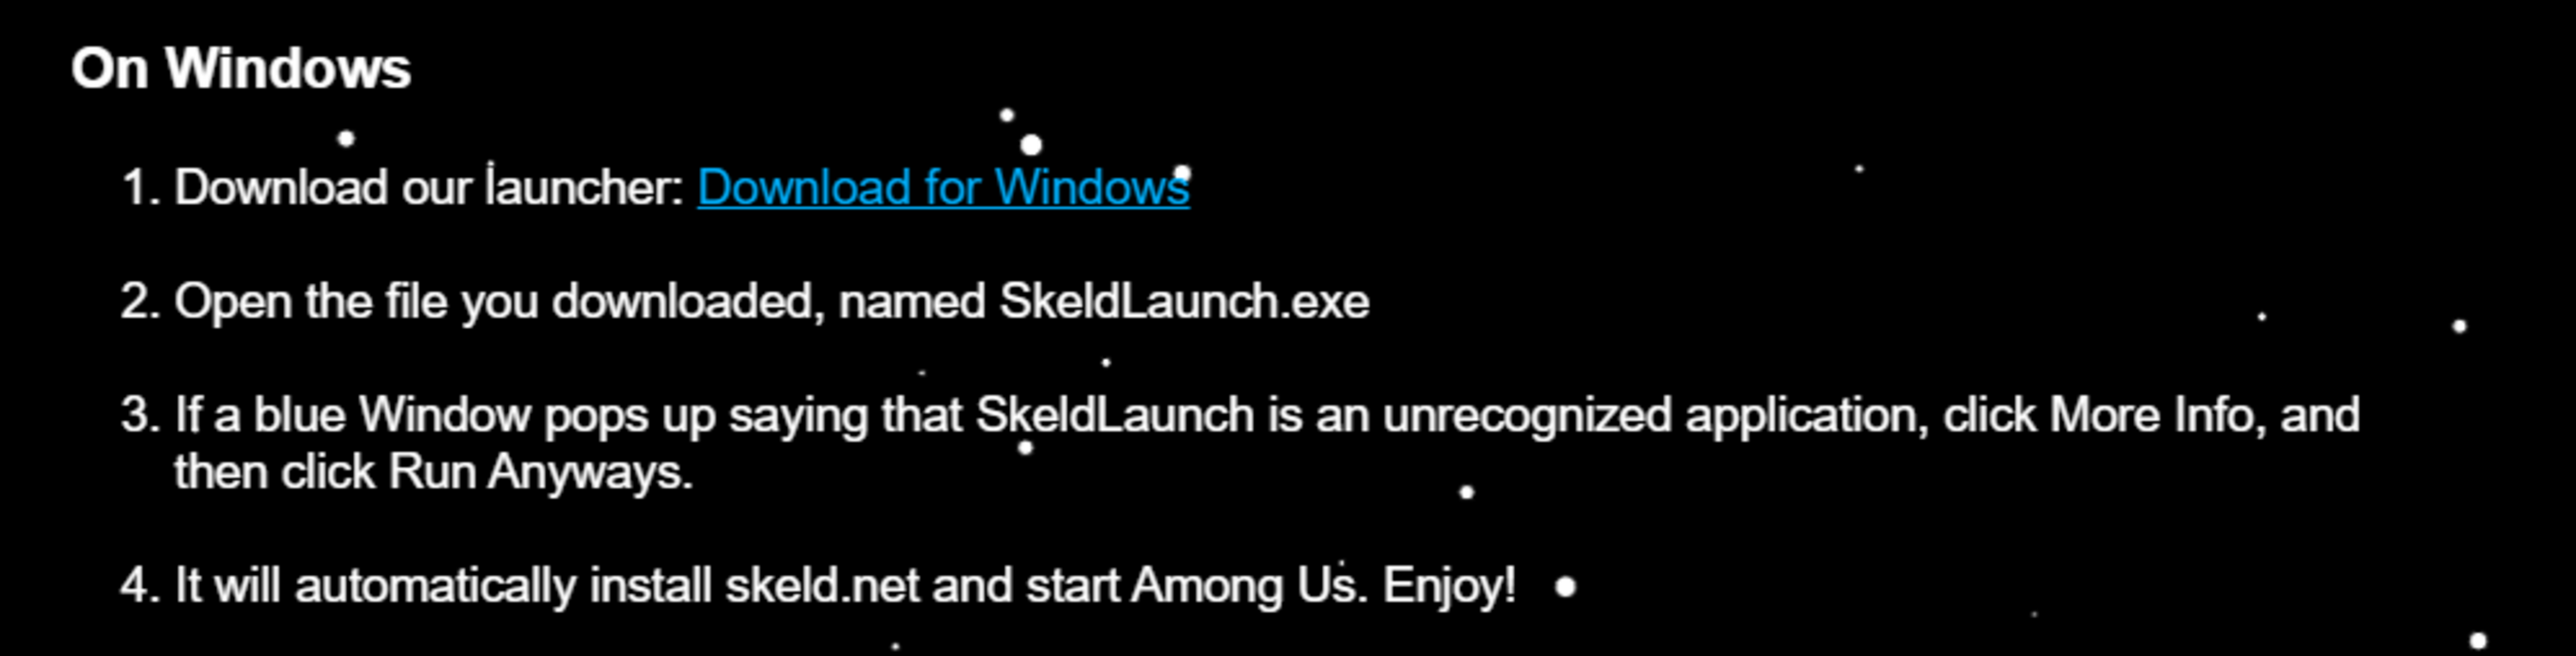 Skeld.net 1.1 feature